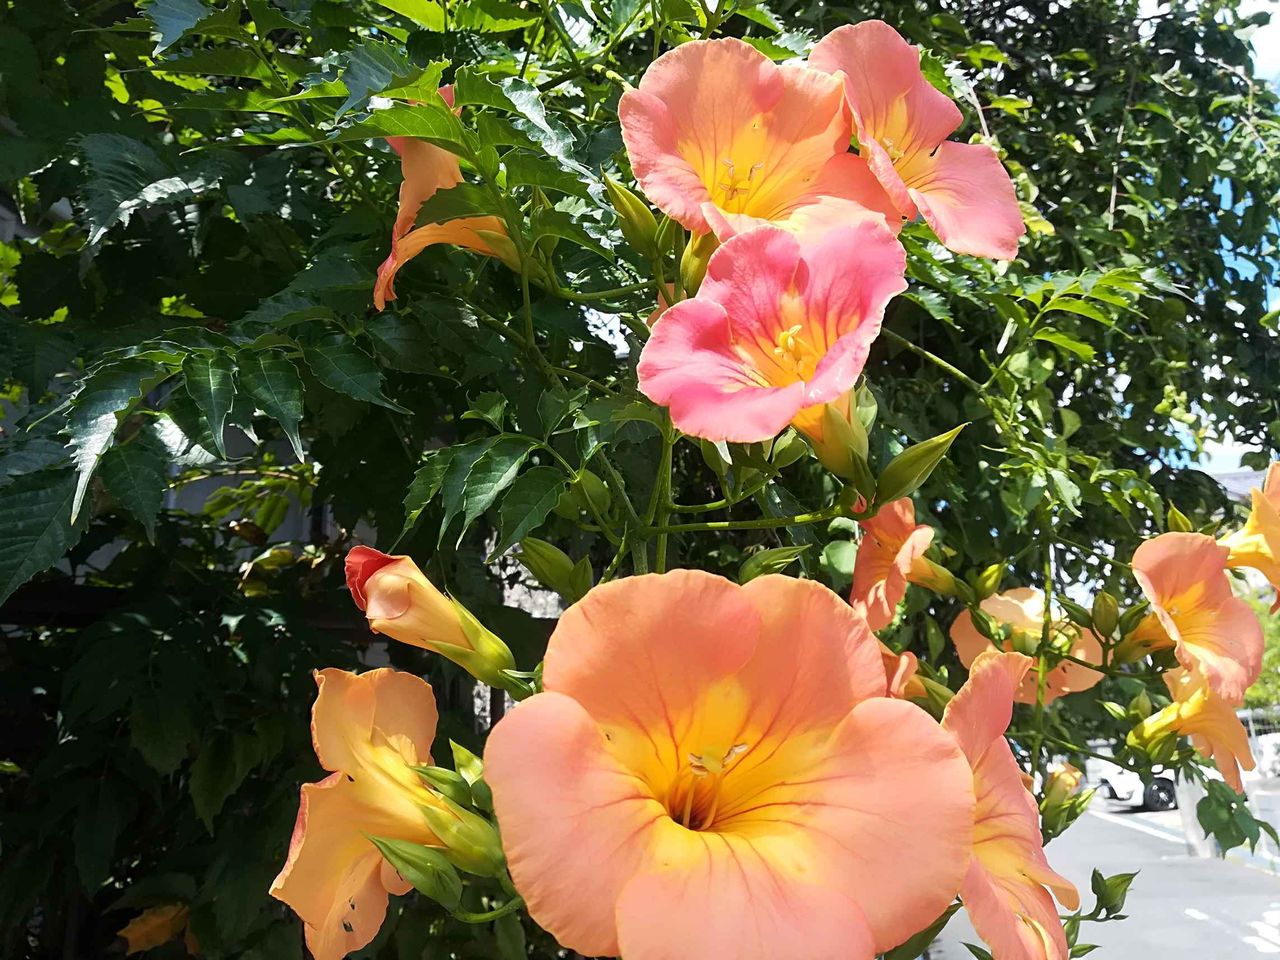 高槻の街かどで咲いてきているこの花は何 オレンジの花が特徴 19年 高槻network新聞